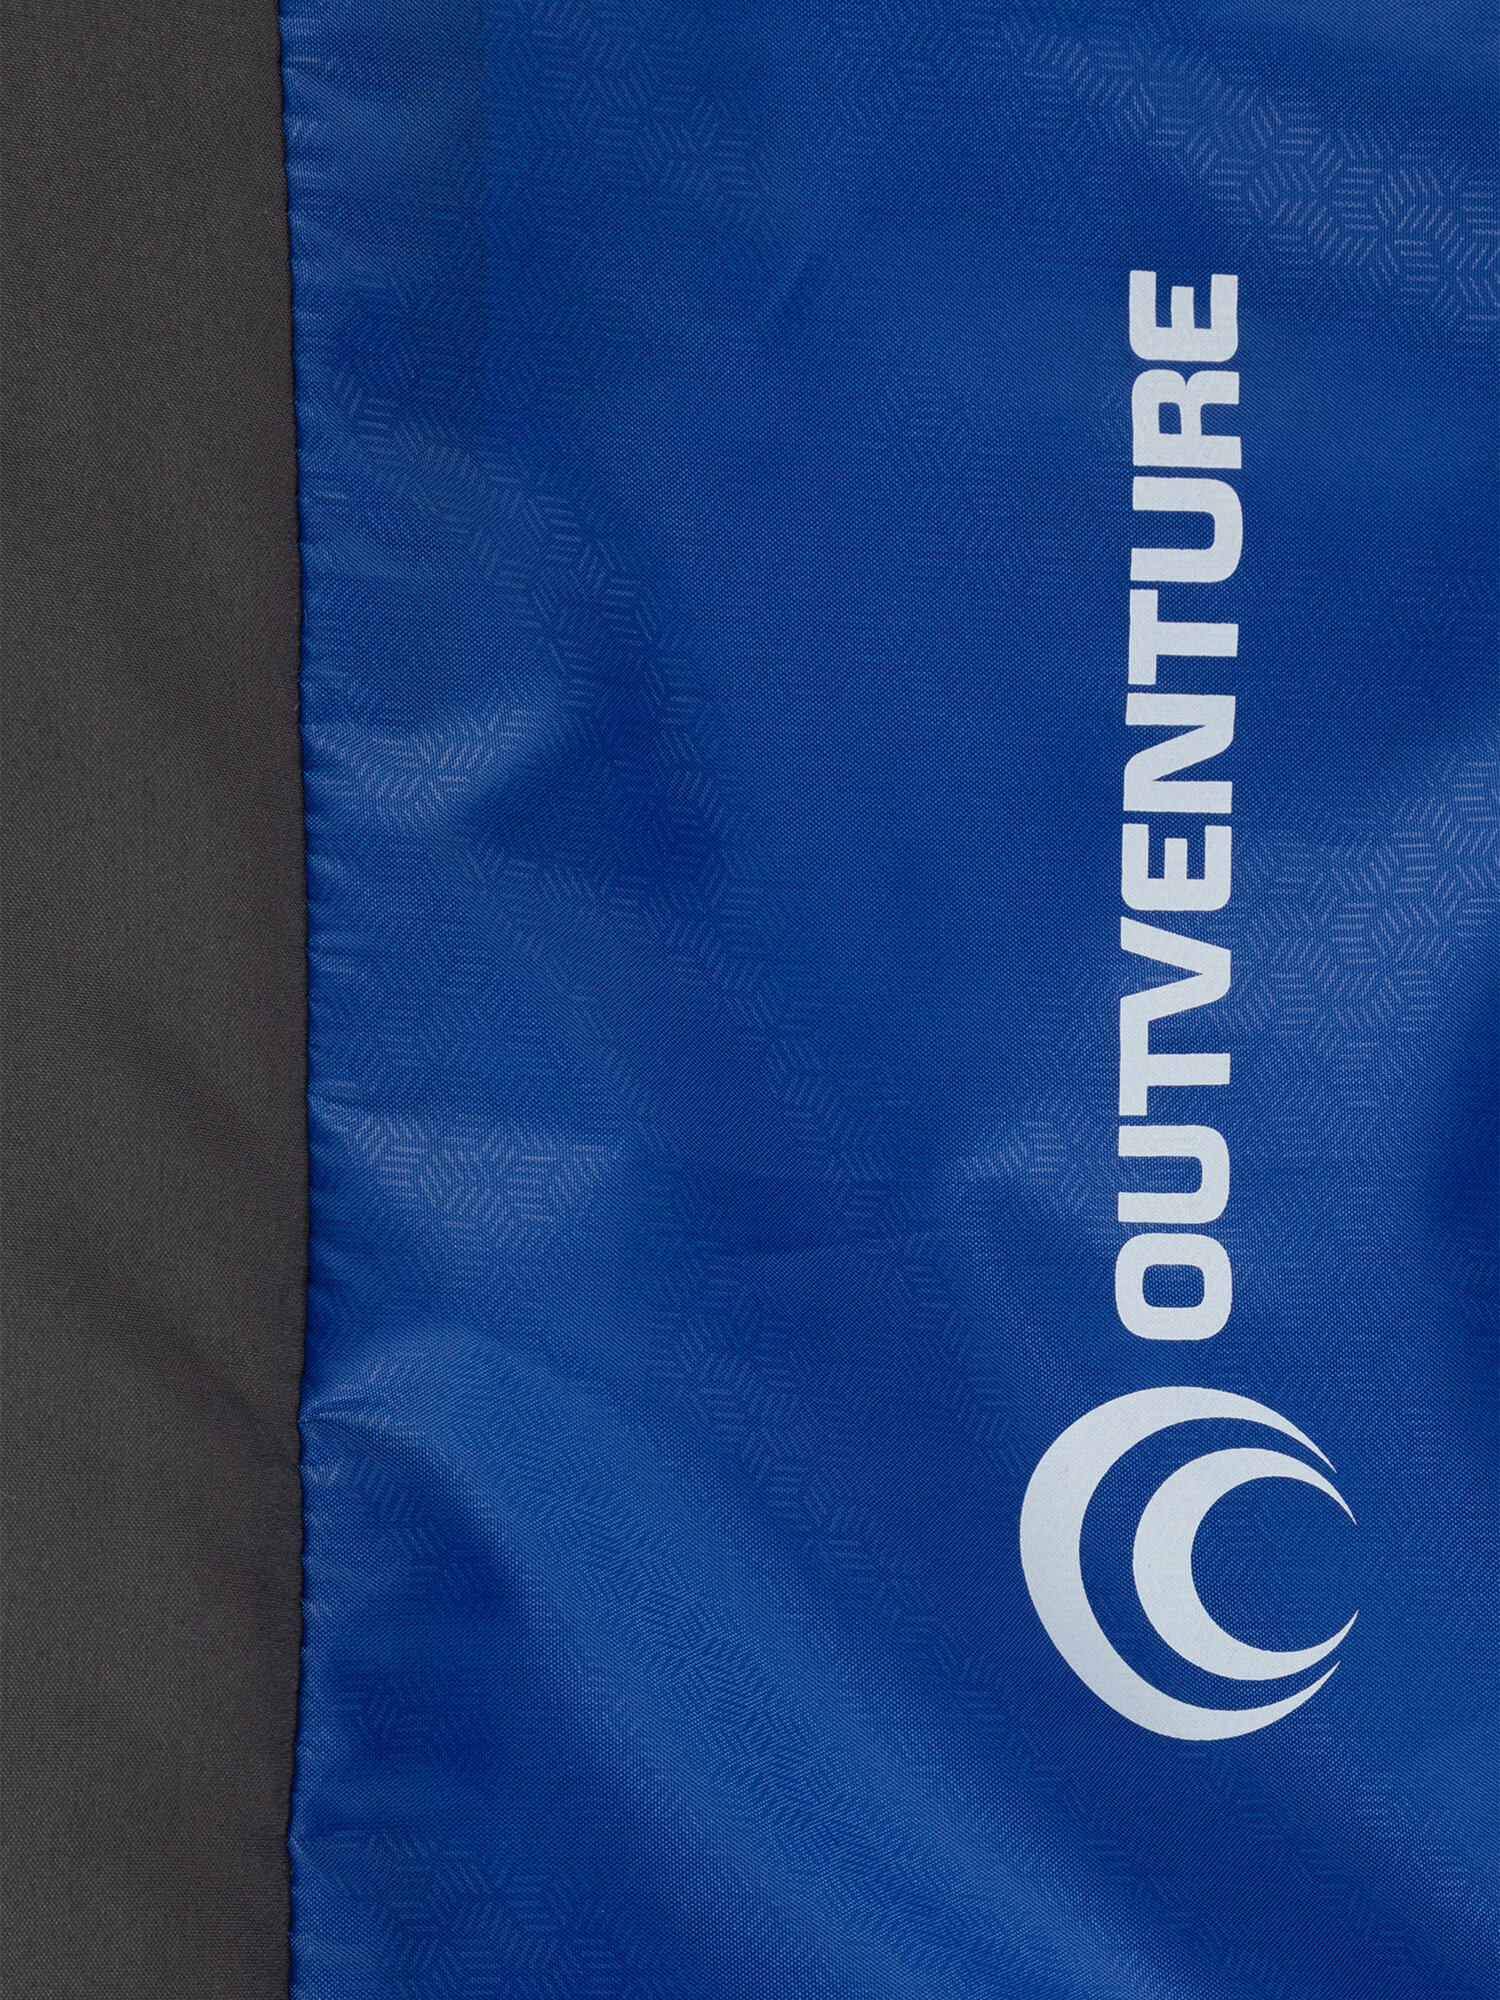 Спальный мешок Outventure Oregon T +15 Синий; RUS: Без размера, Ориг: one size